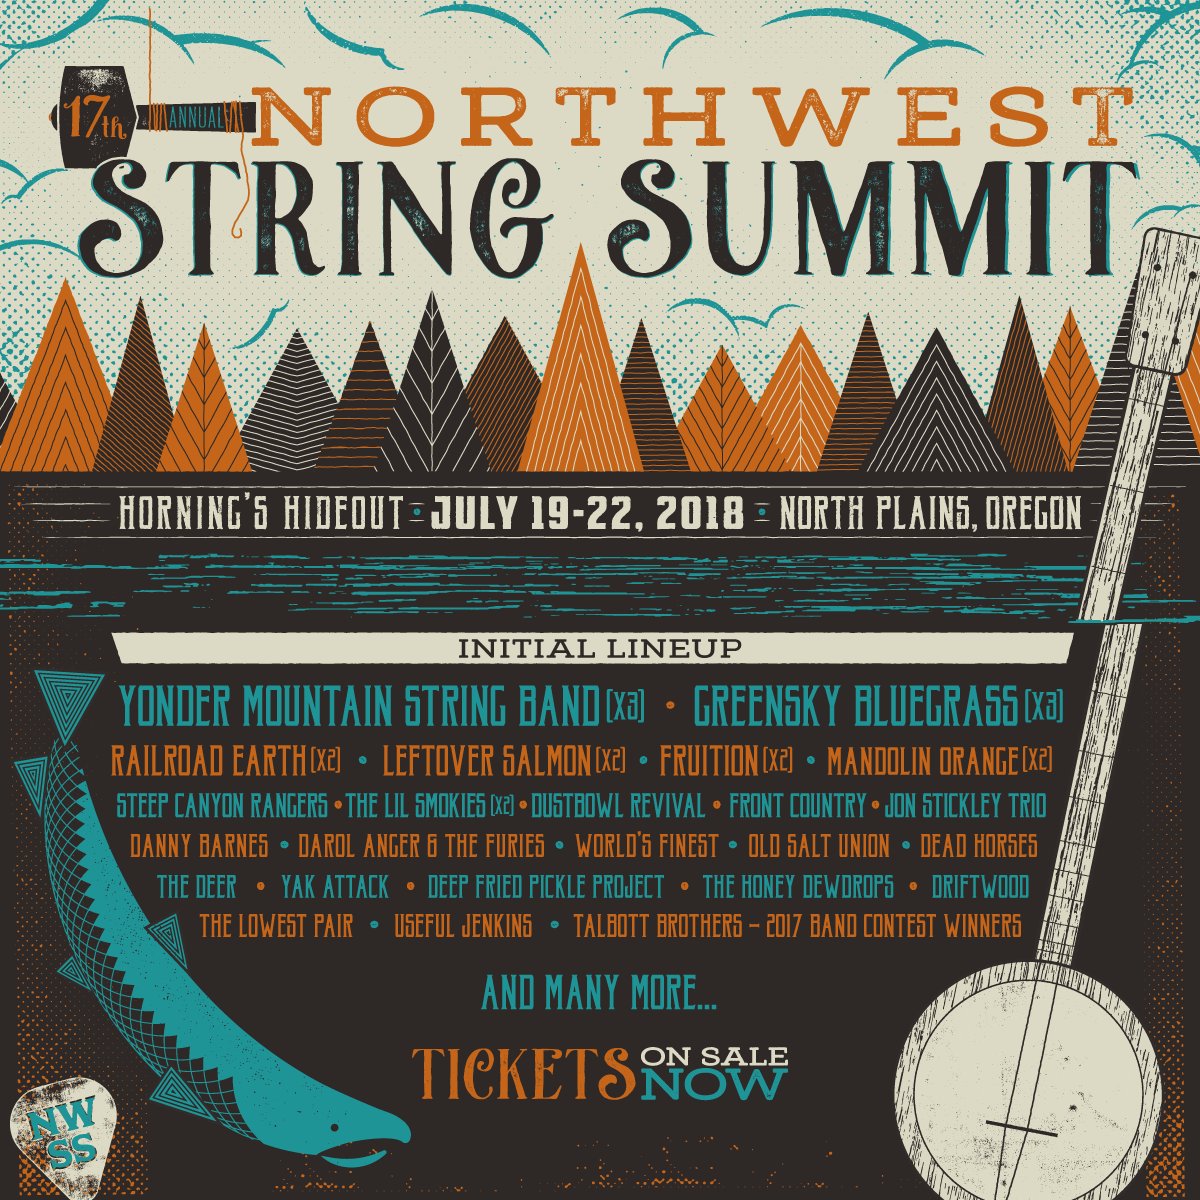 Northwest String Summit 2018 lineup. Photo by: Northwest String Summit